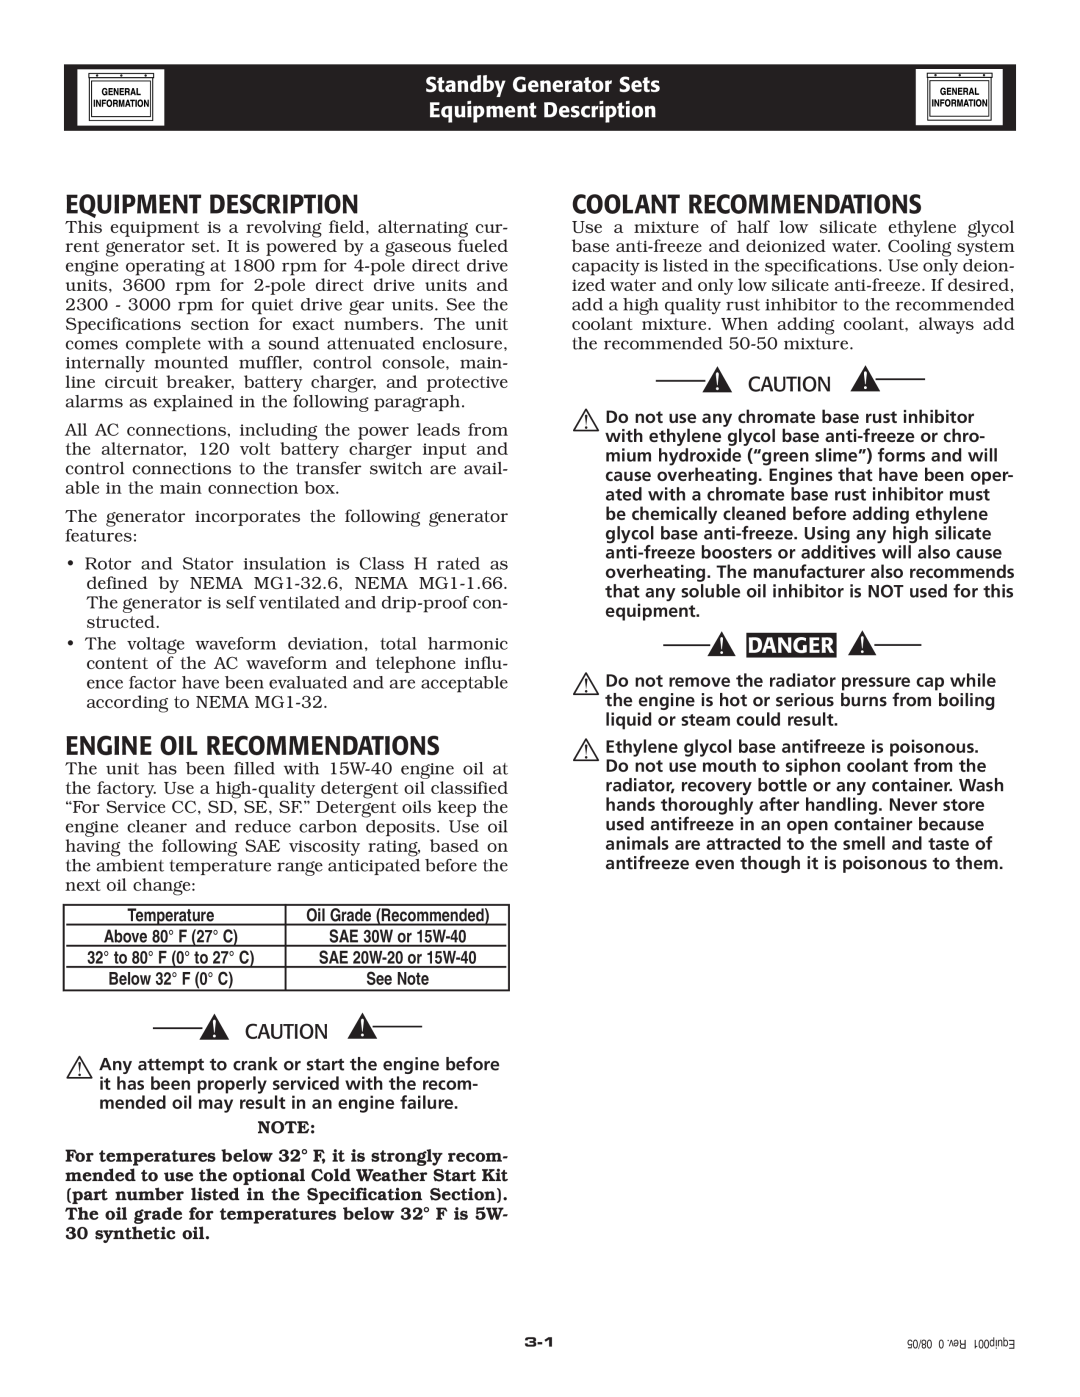 Generac Power Systems 005220-0 Equipment Description, Engine Oil Recommendations, Coolant Recommendations, Danger 